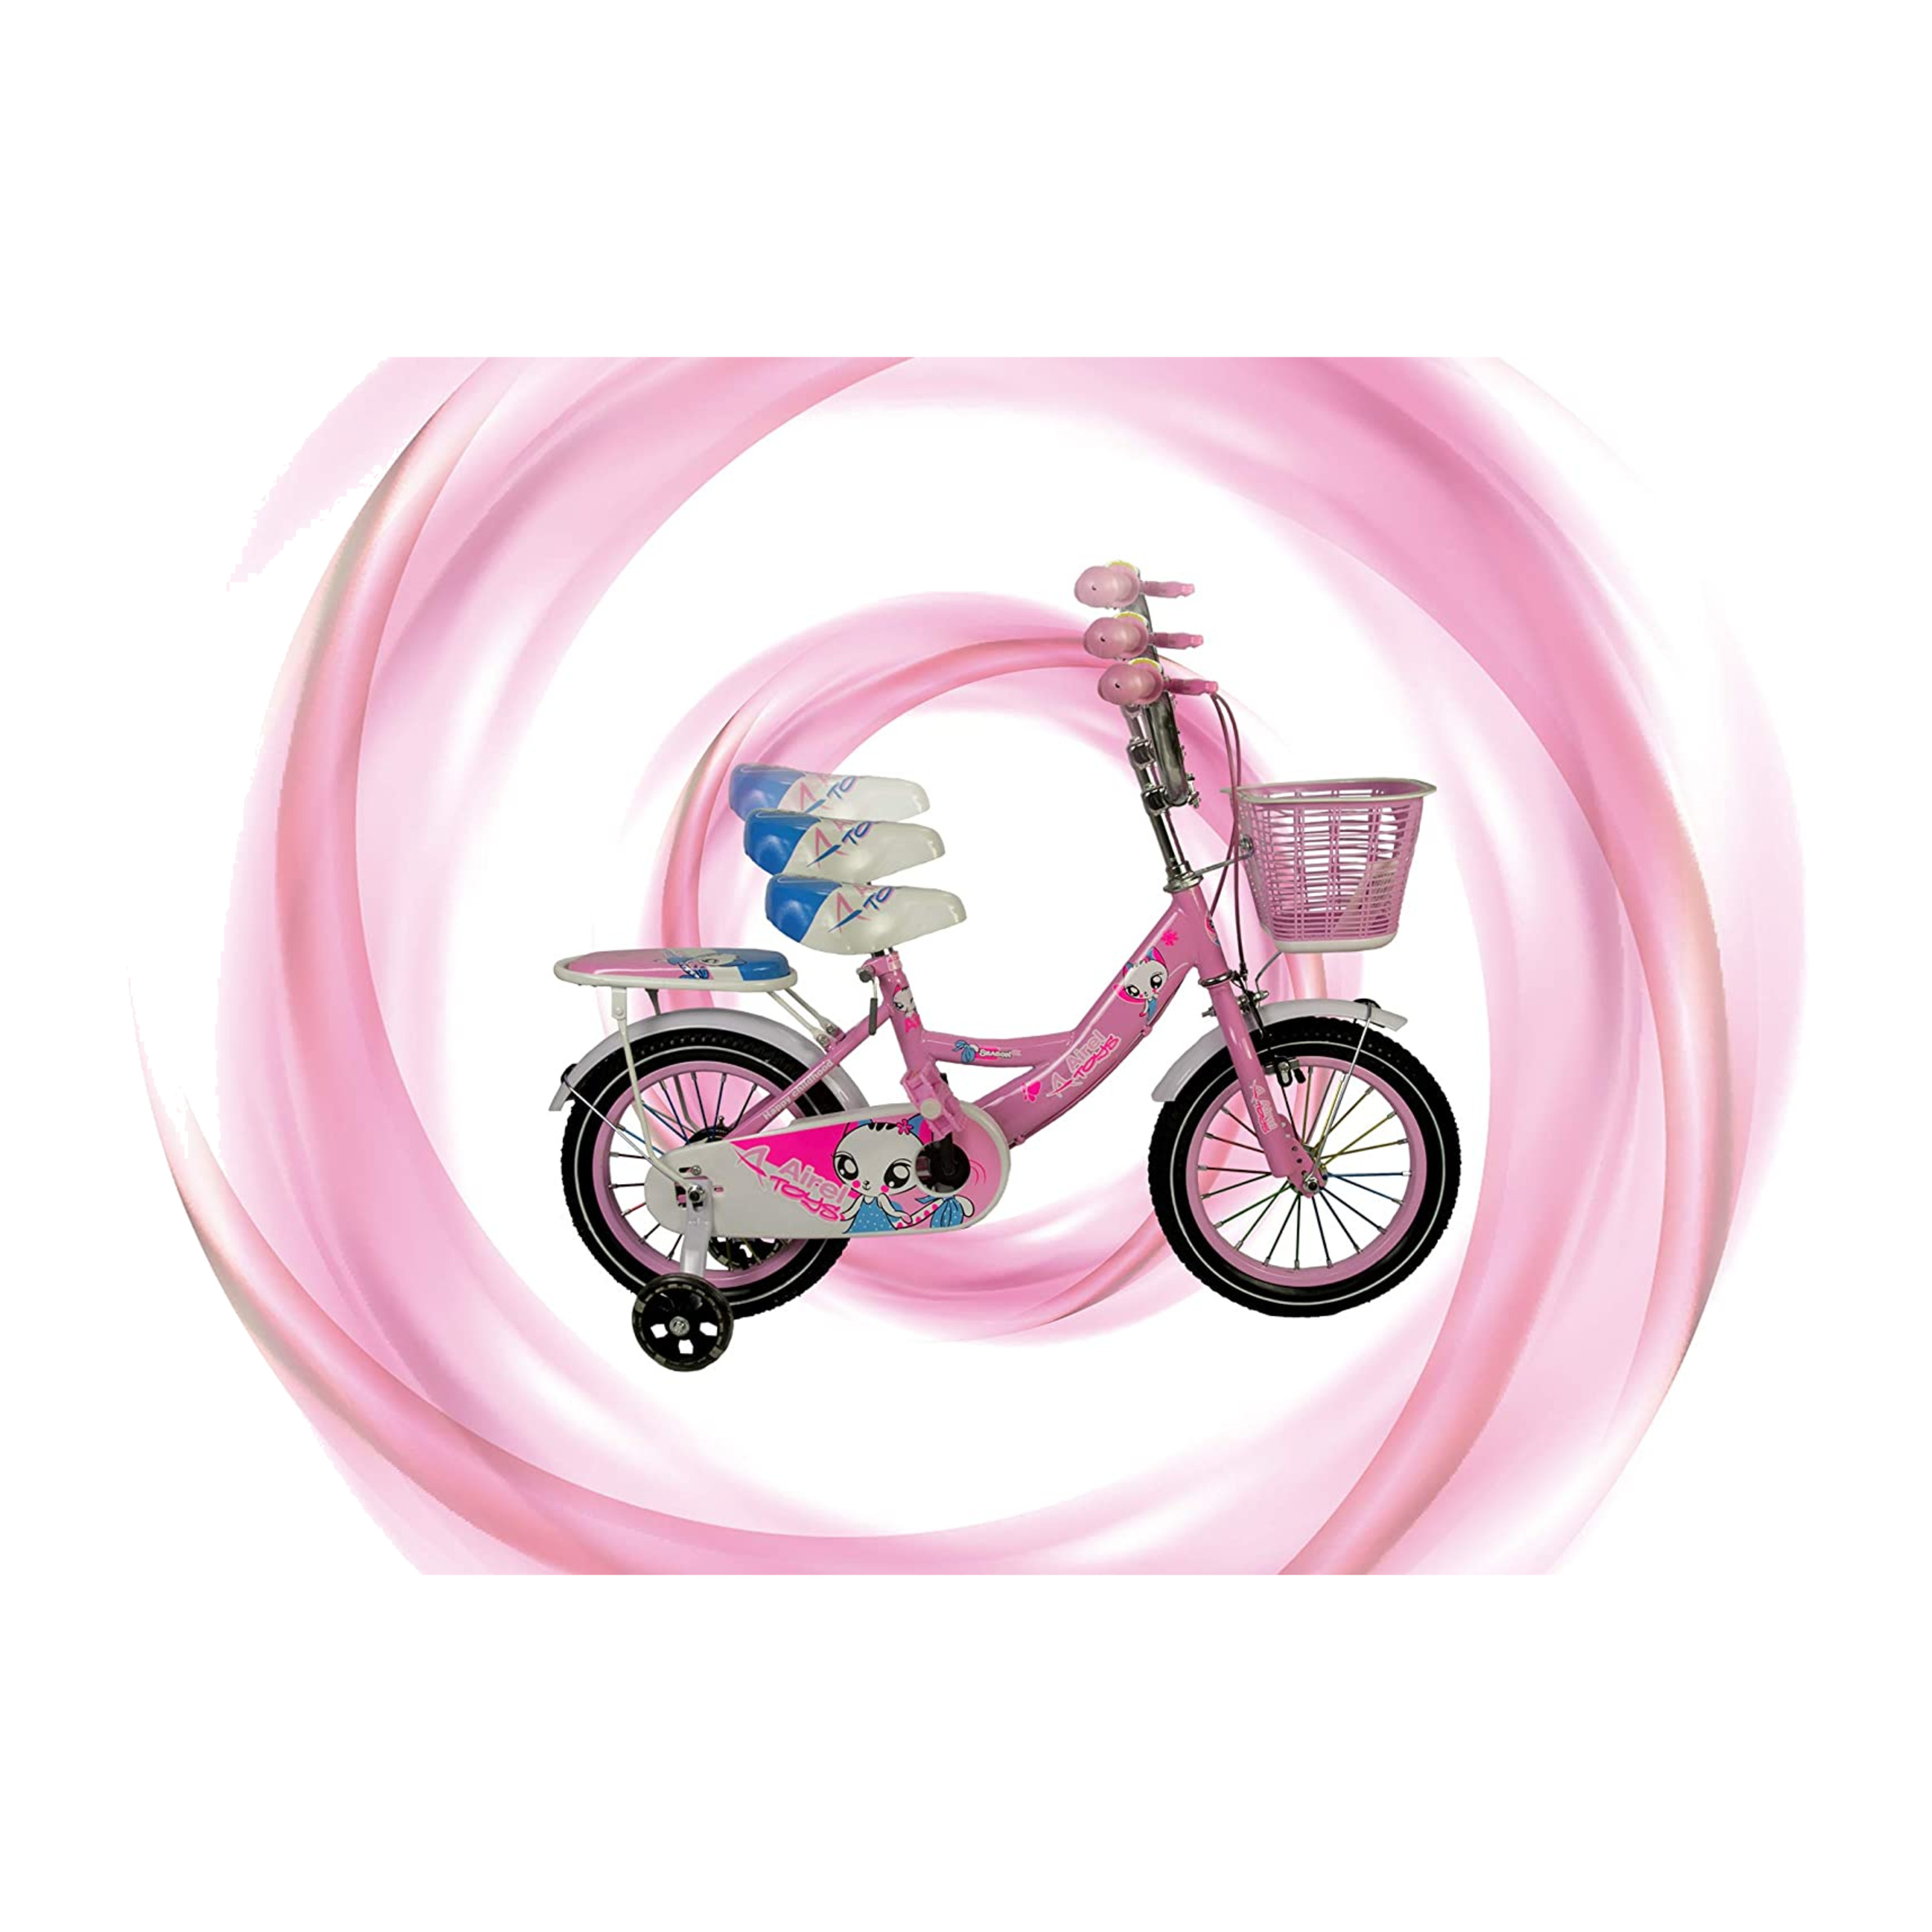 Bici Ruedines-cesta Niñas 3-7 Años Medidas: 80.5x19x40cm Color Rosa